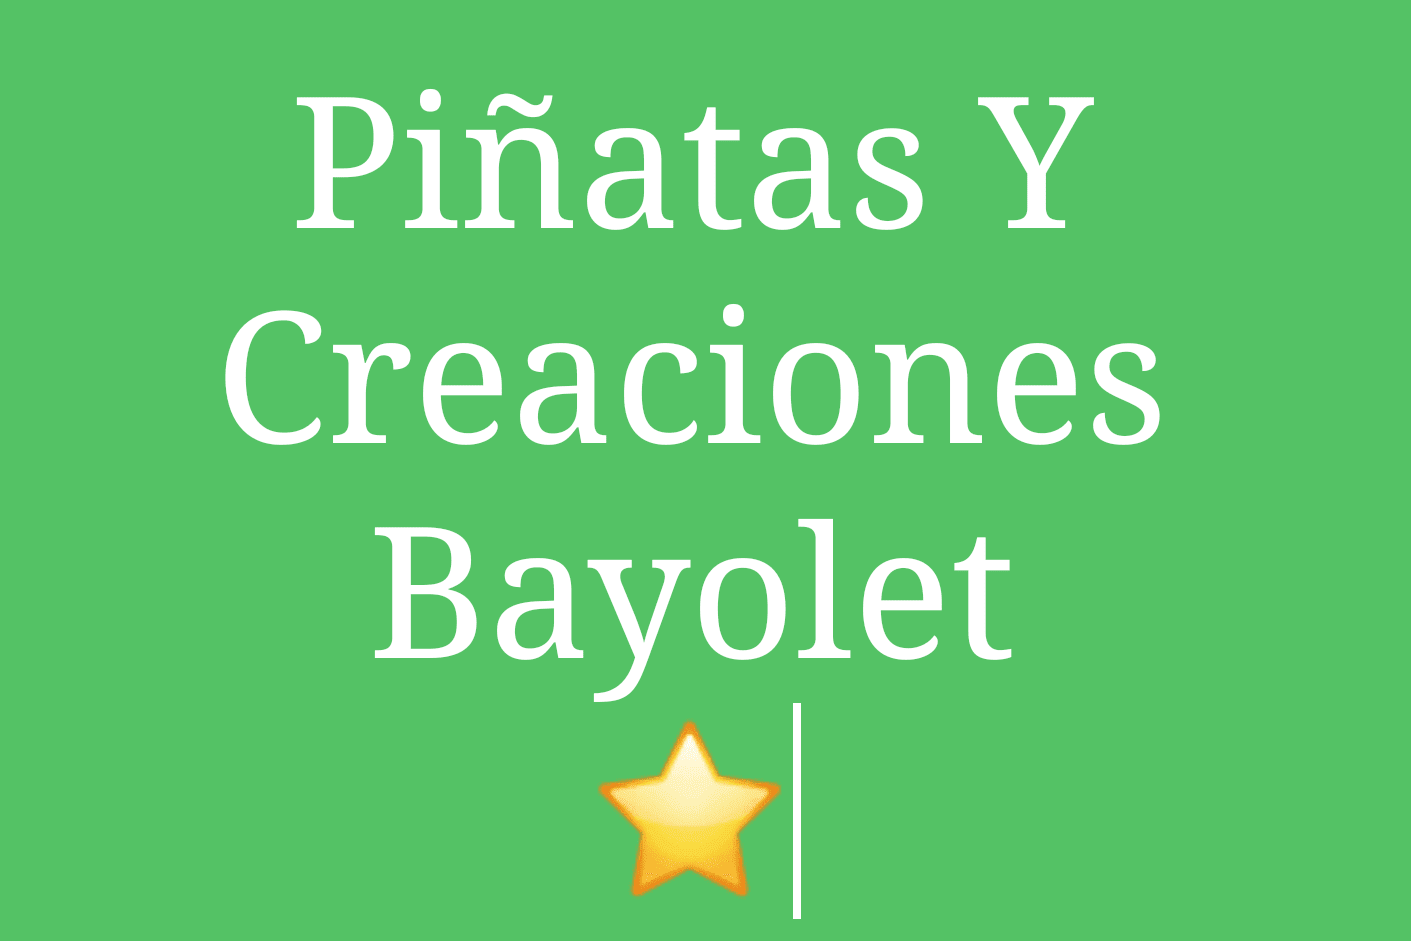 Piñatas Y Creaciones Bayolet